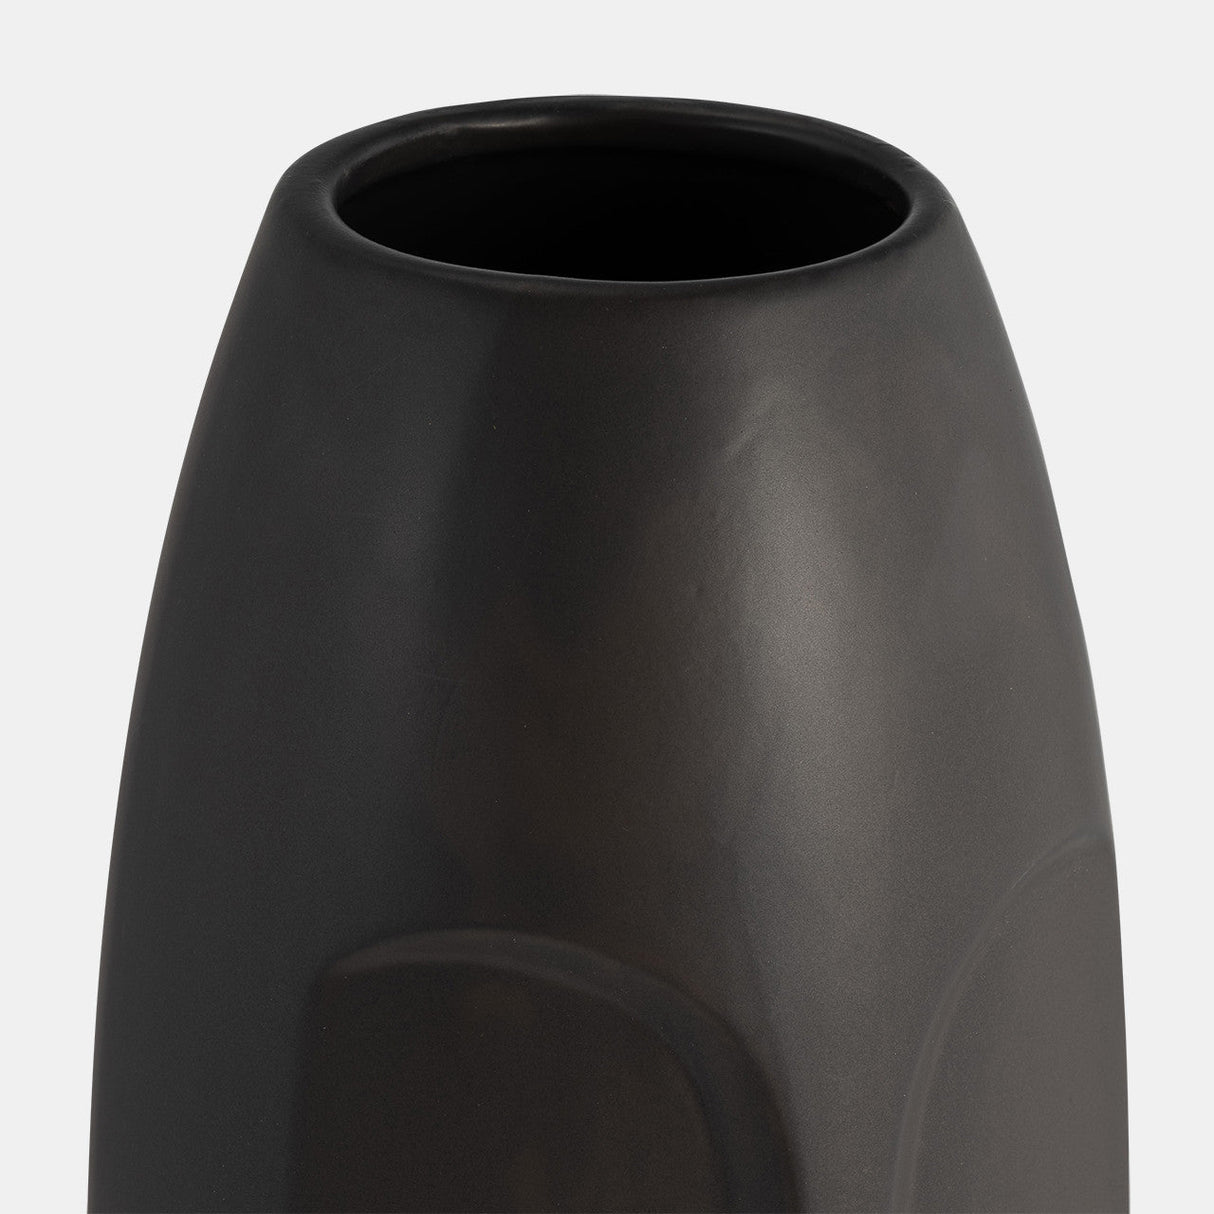 14"h Face Vase, Black